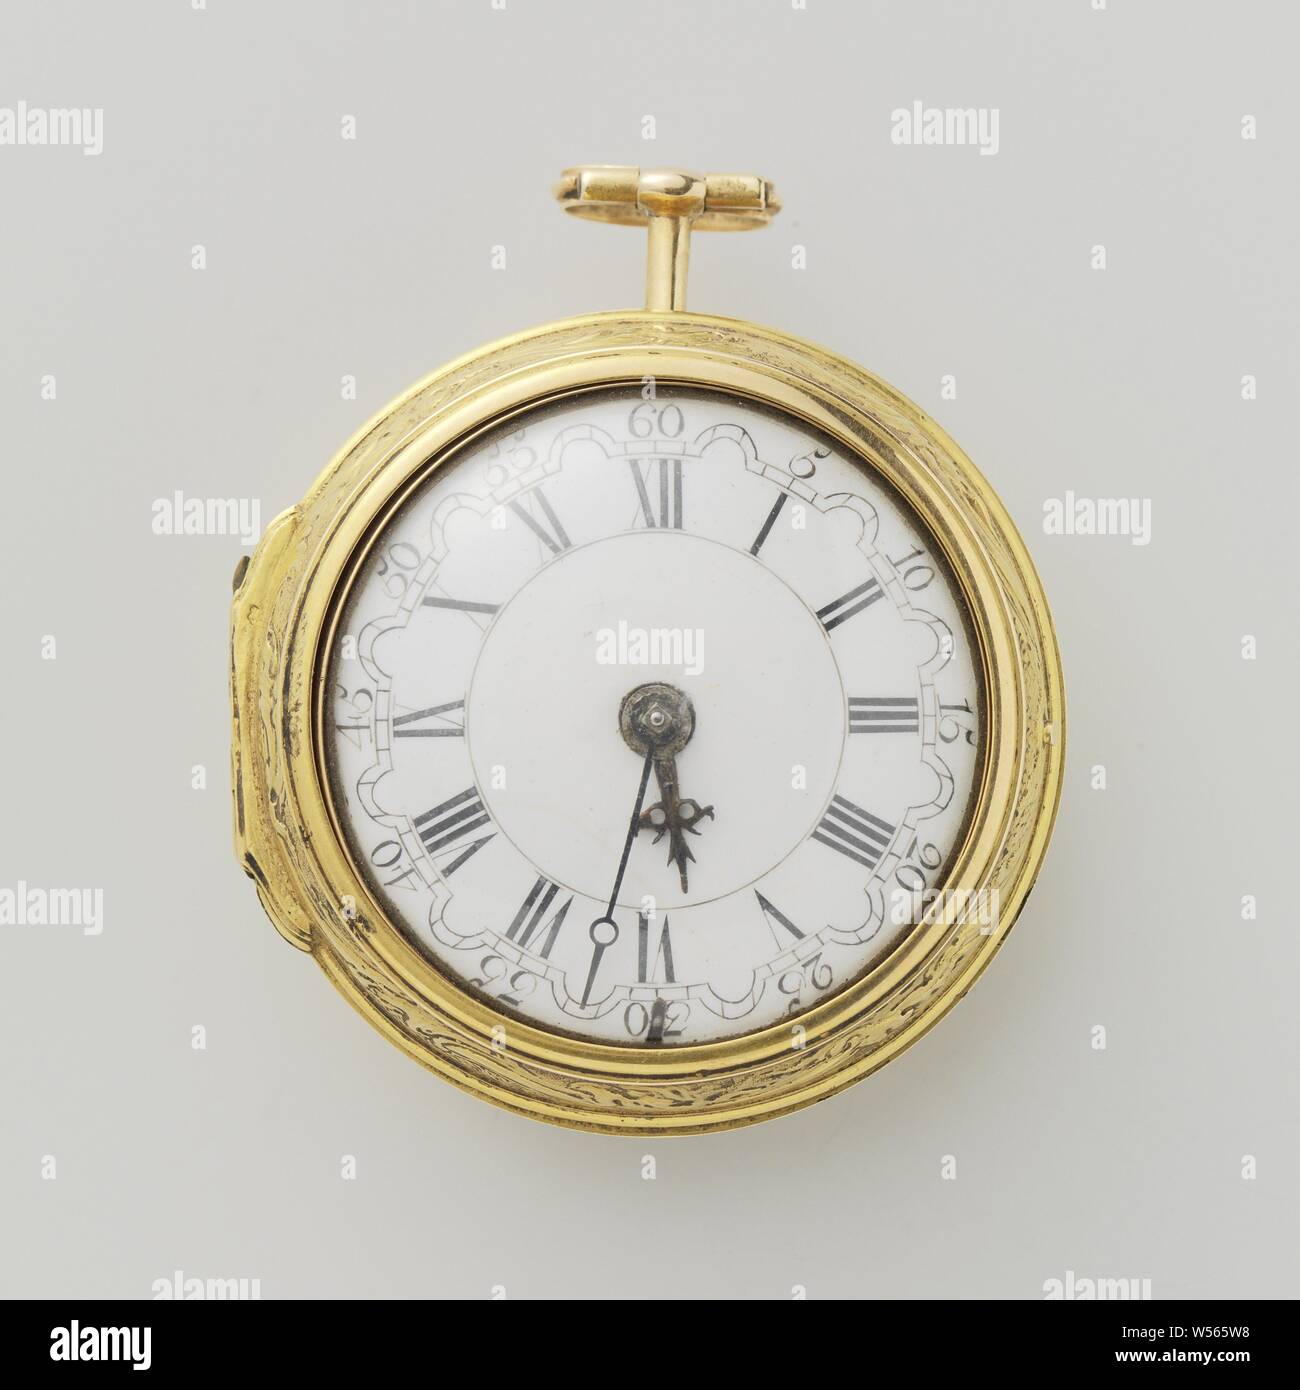 Sehen Sie sich mit der Hochzeit, Goldene Armbanduhr mit zwei Fällen. Auf  der Platine gekennzeichnet: Wilter London 3006. Auf dem losen Gold Fall  eine bildliche Darstellung in der Fahrt mit der Trauung.